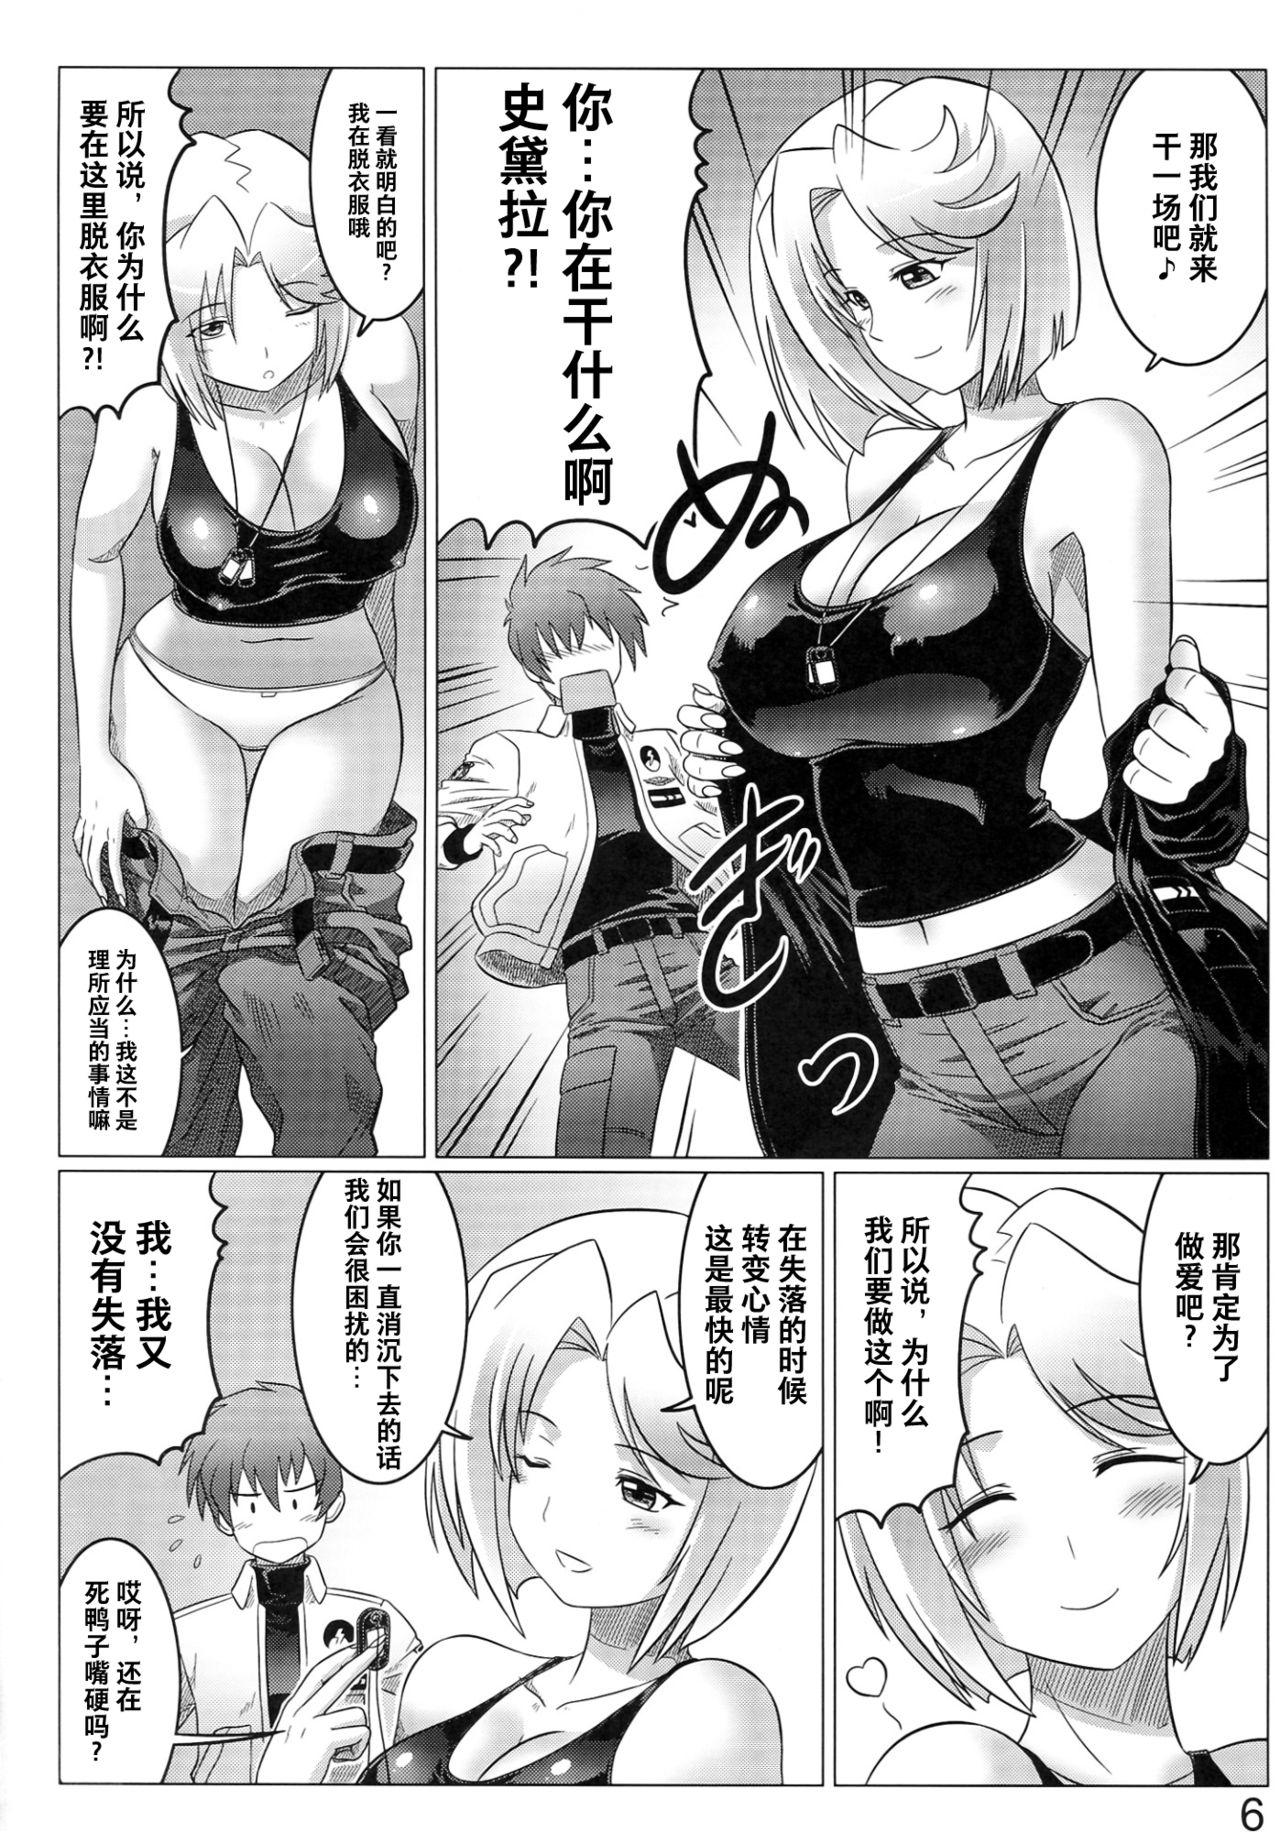 Female Orgasm Argos no Senotome-tachi - Muv-luv alternative total eclipse Uncensored - Page 6